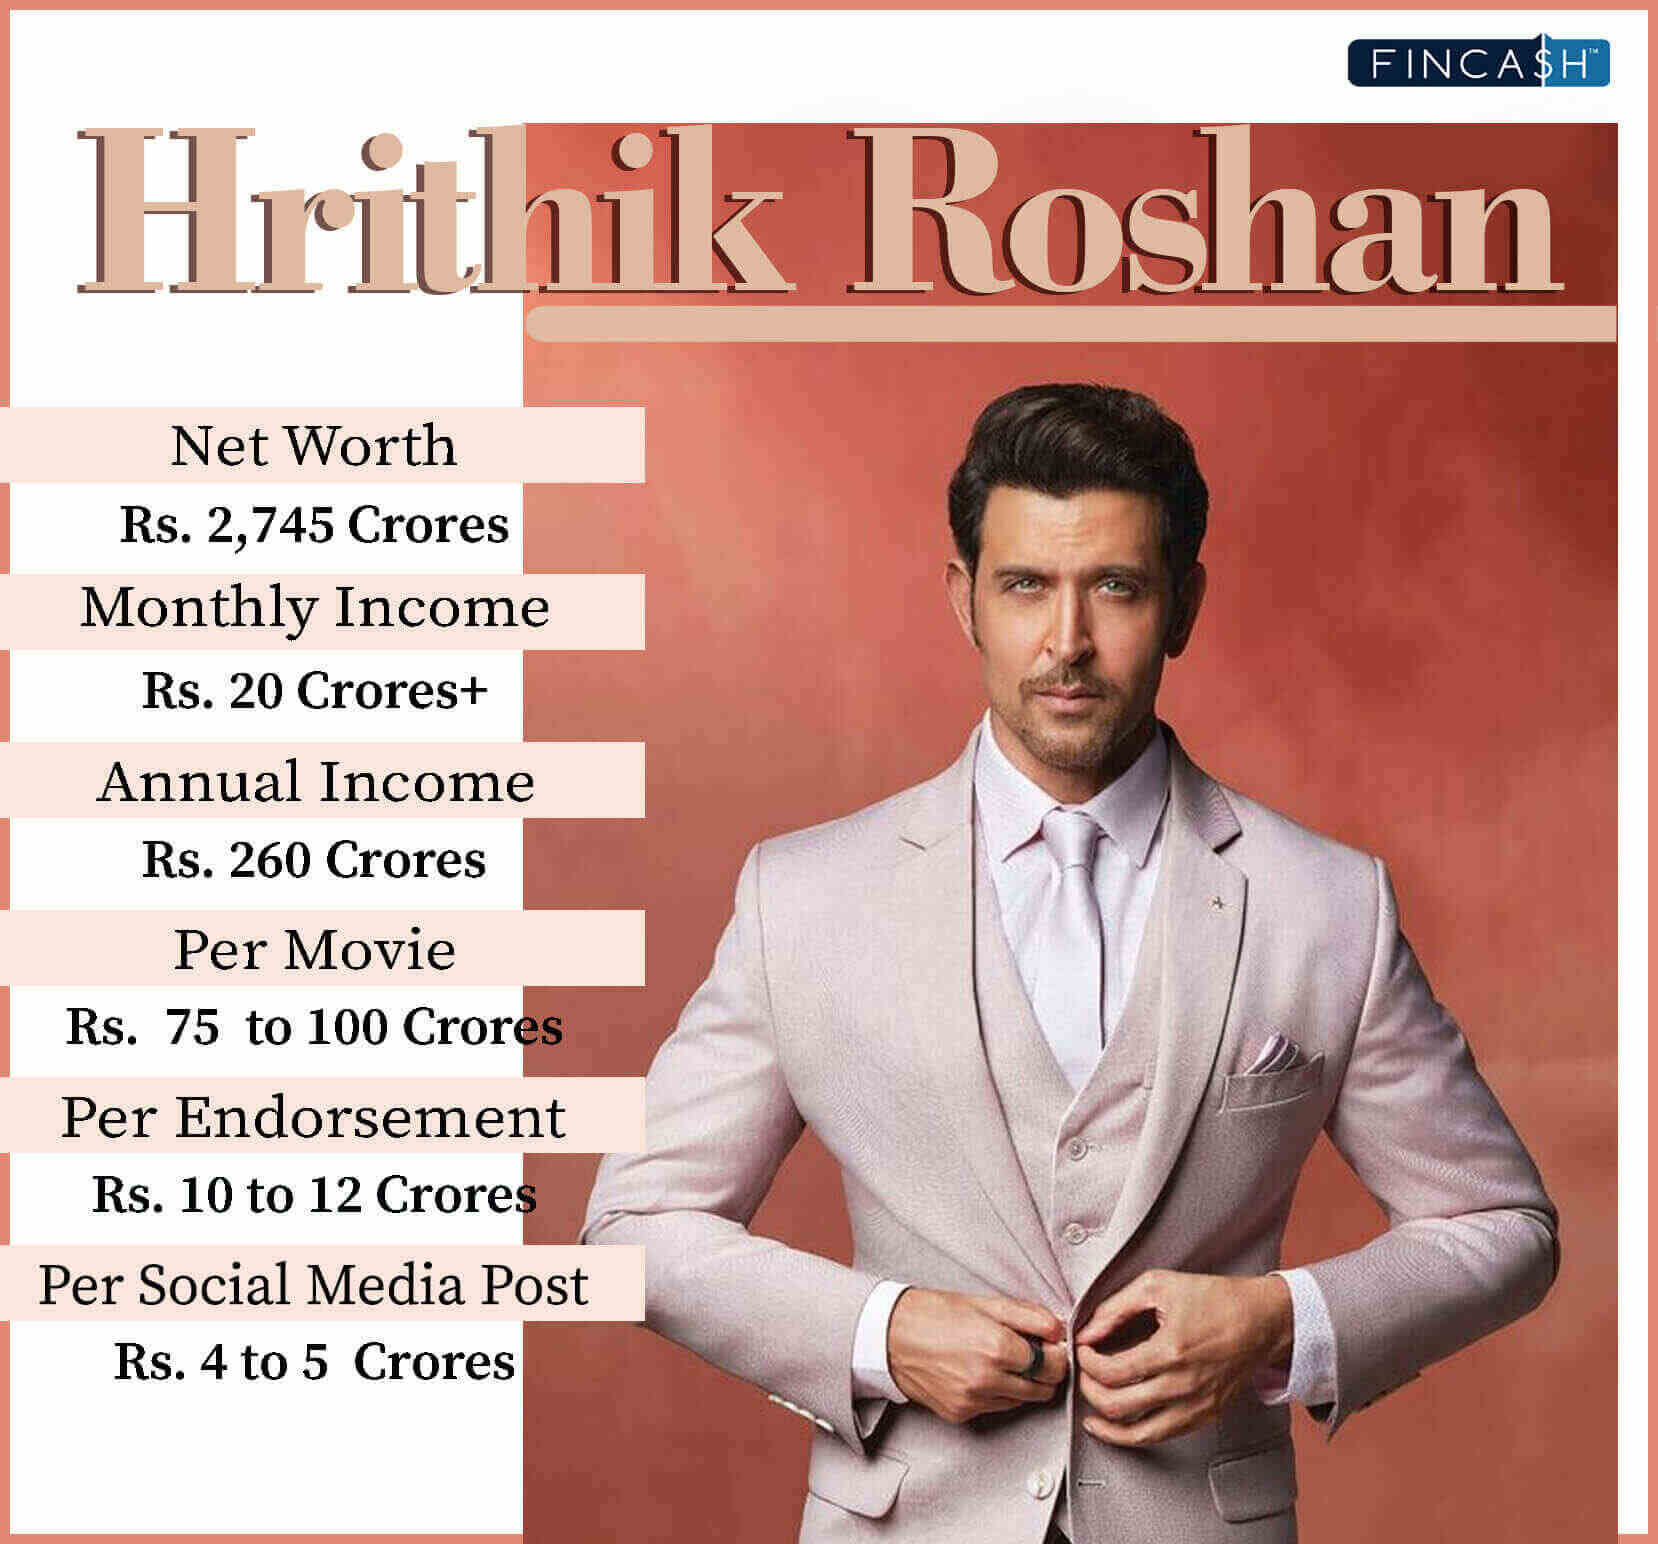 Hrithik Roshan Net Worth